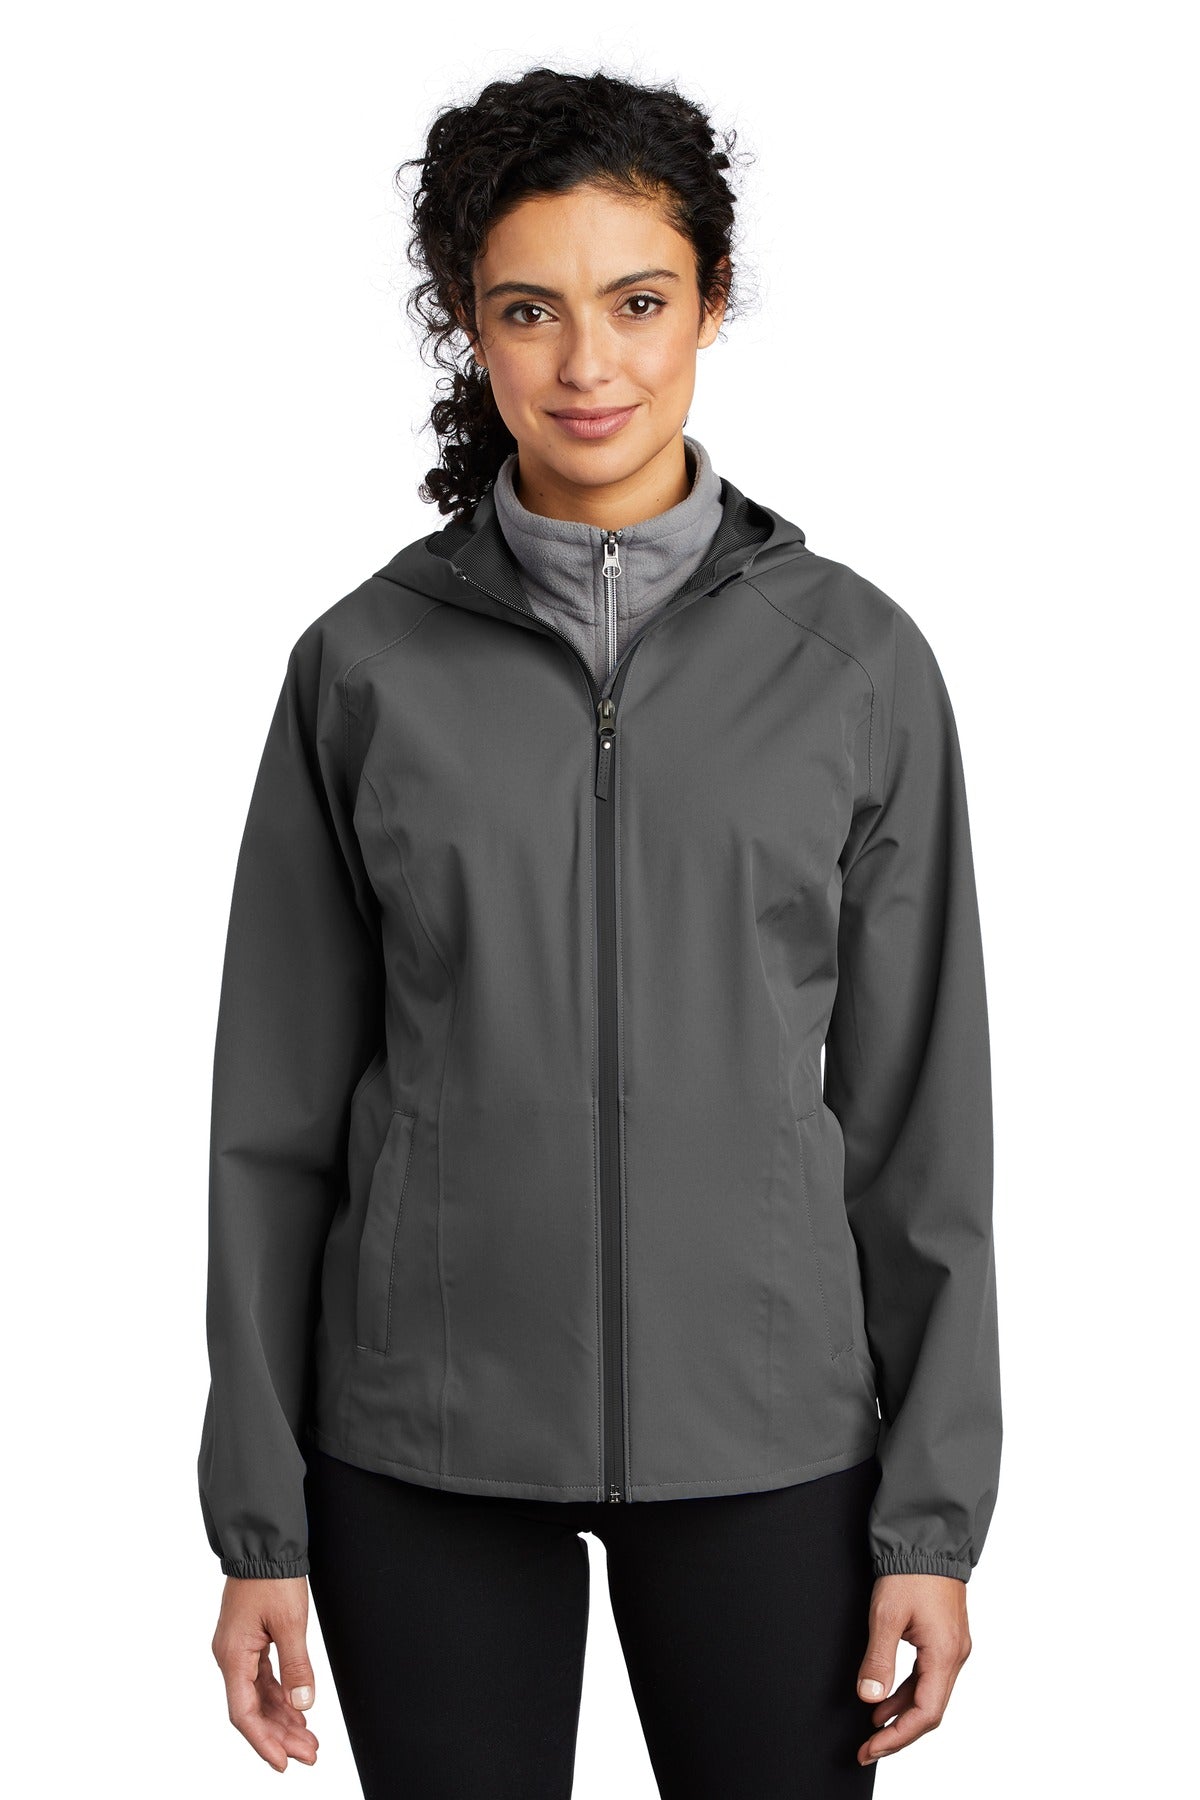 Port Authority ® Ladies Essential Rain Jacket L407